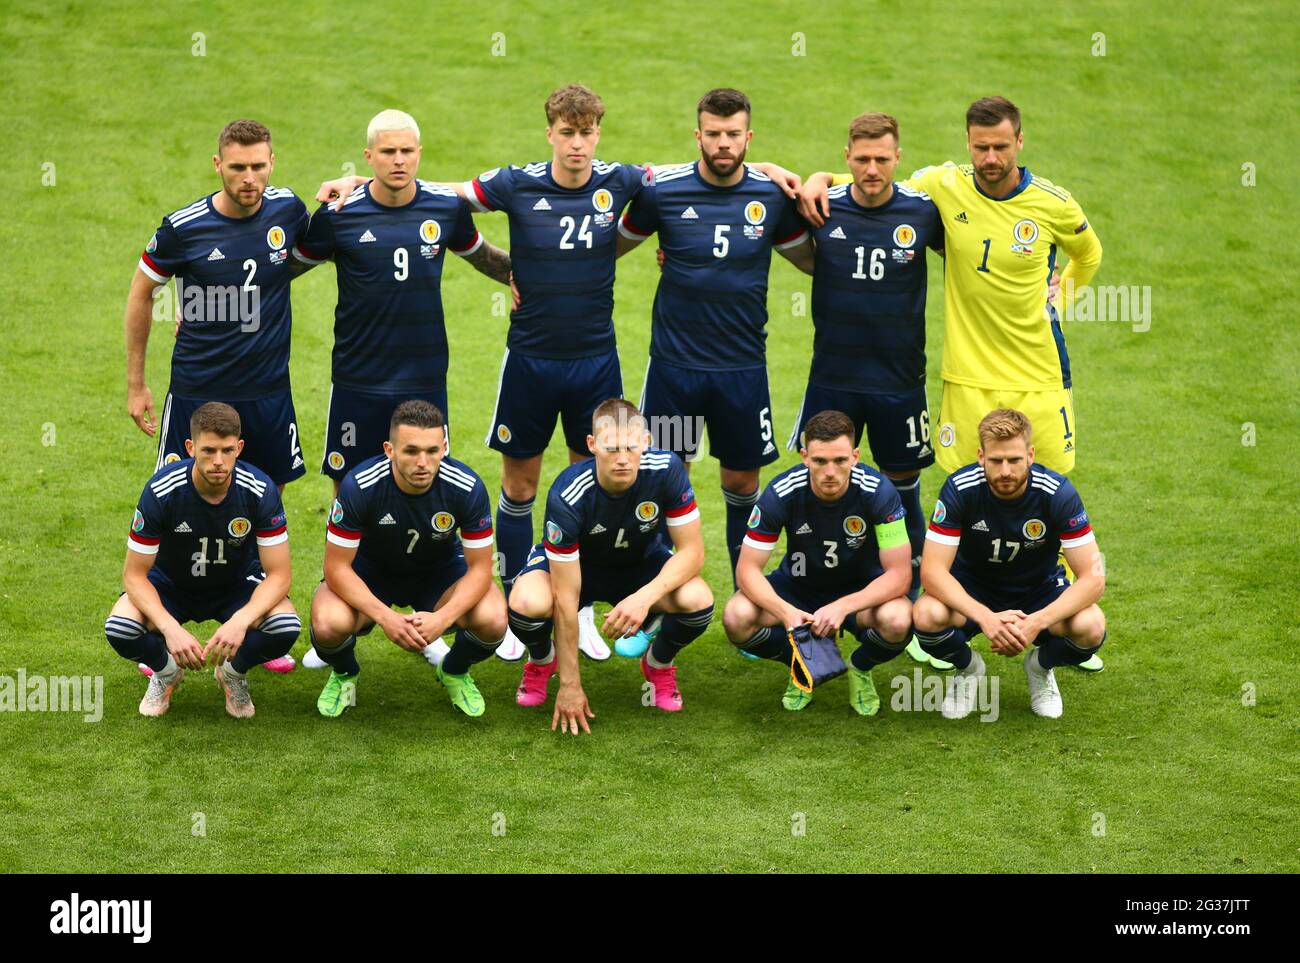 Hampden Park, Glasgow, Großbritannien. Juni 2021.  Fußball-Europameisterschaft 2021, Schottland gegen Tschechien; Team-Line-up  für Schottland Credit: Action Plus Sports/Alamy Live News Stockfotografie -  Alamy